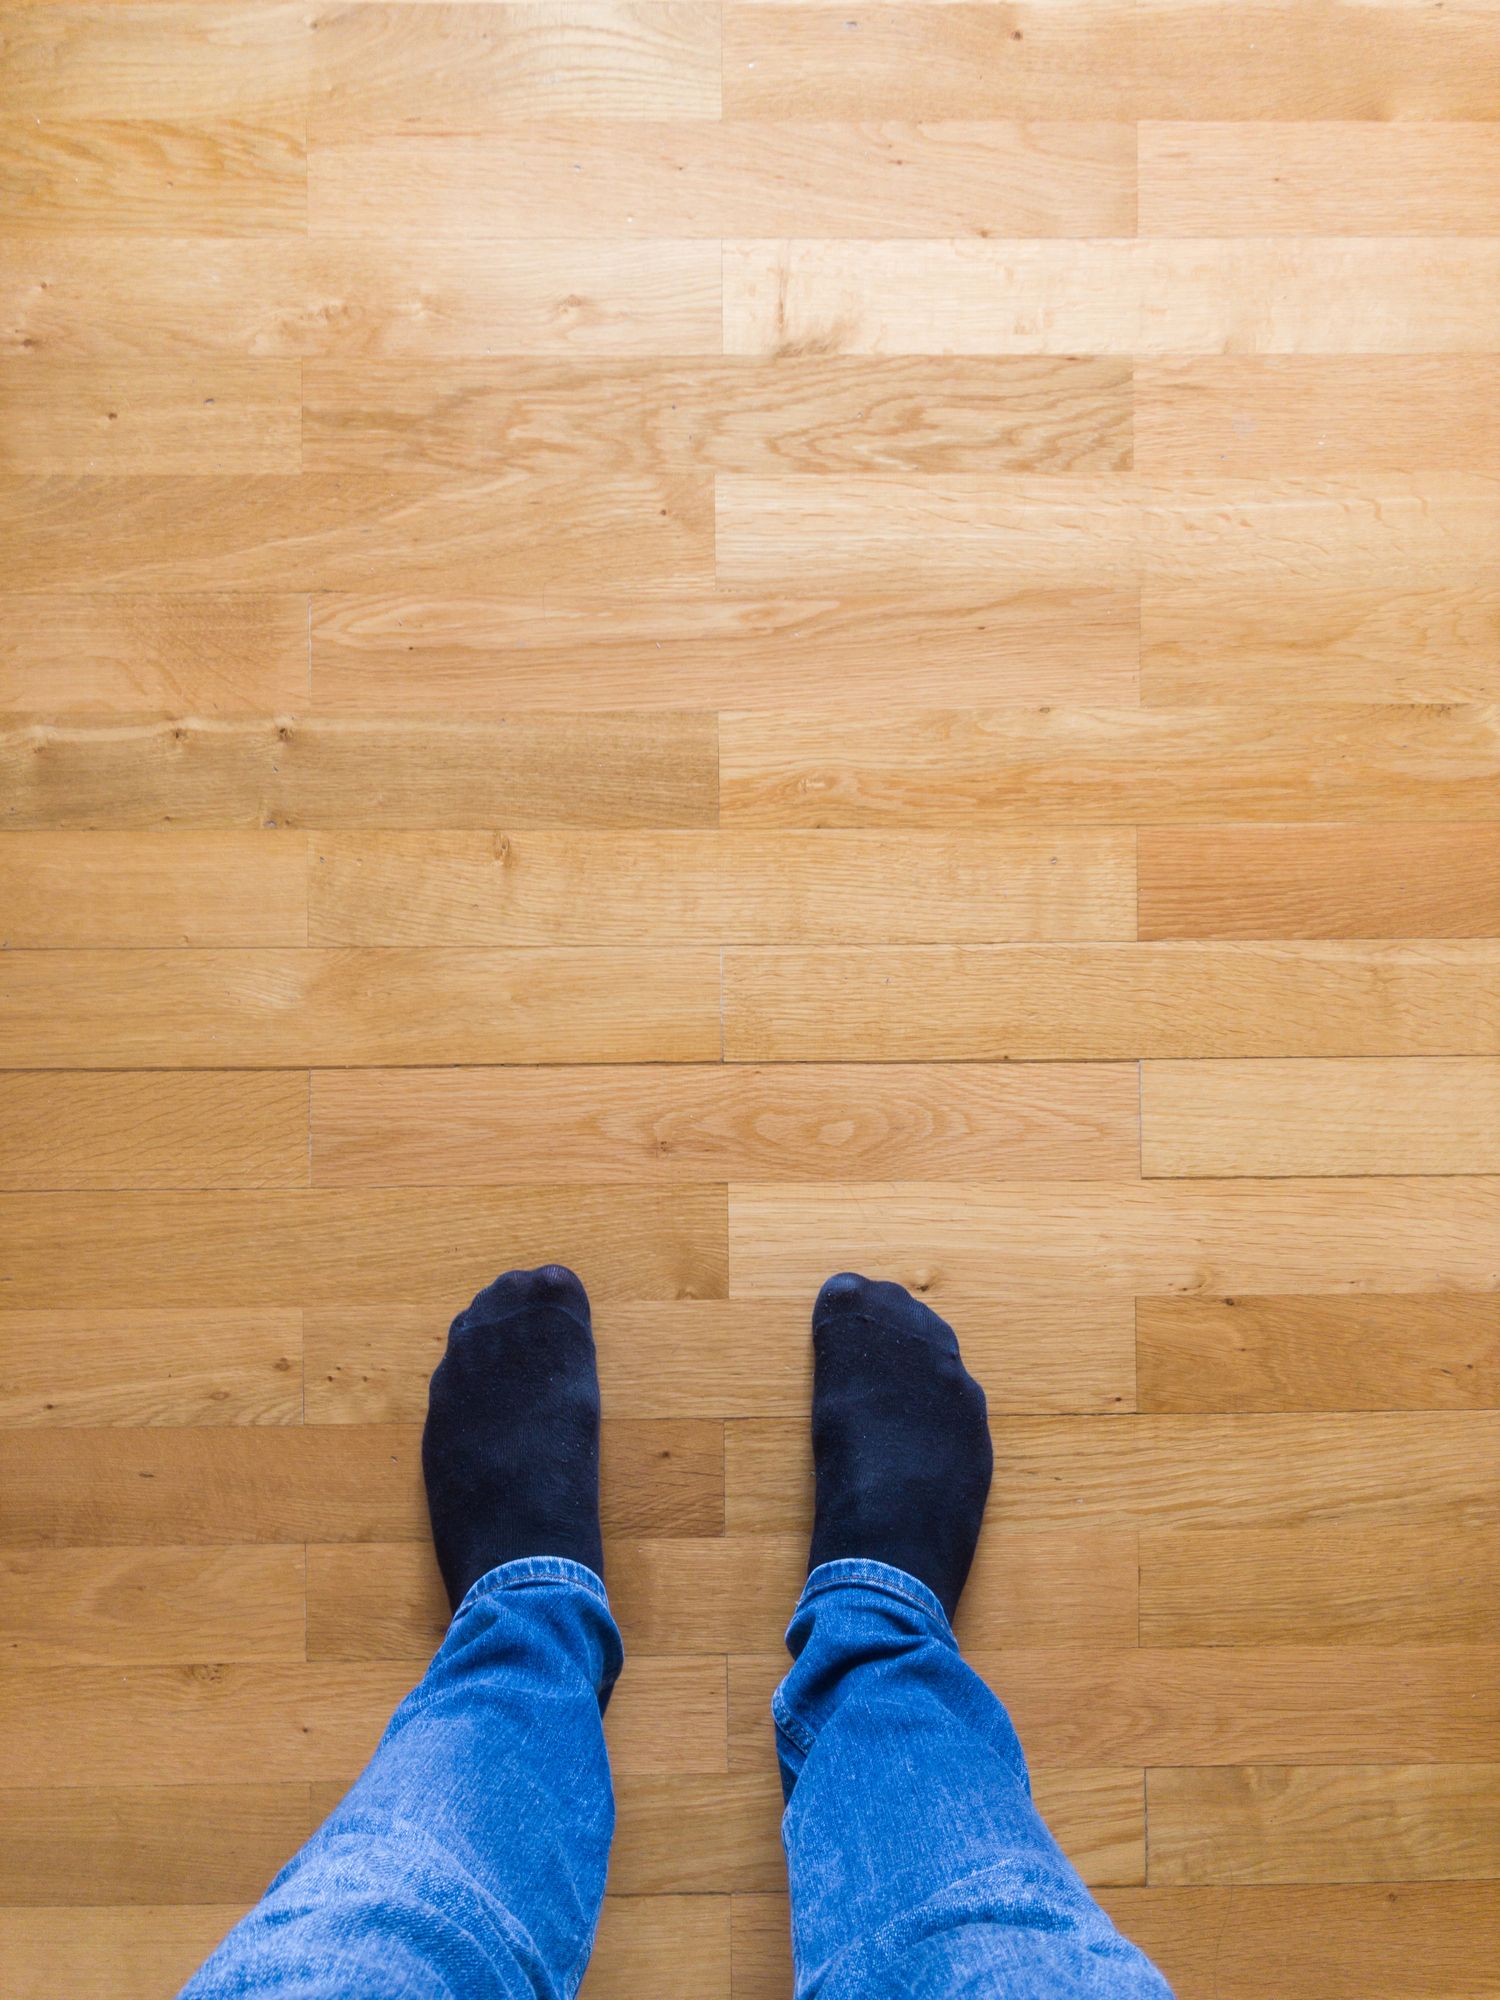 Squeaky Floor Repair, How To Help My Baby Crawl On Hardwood Floors